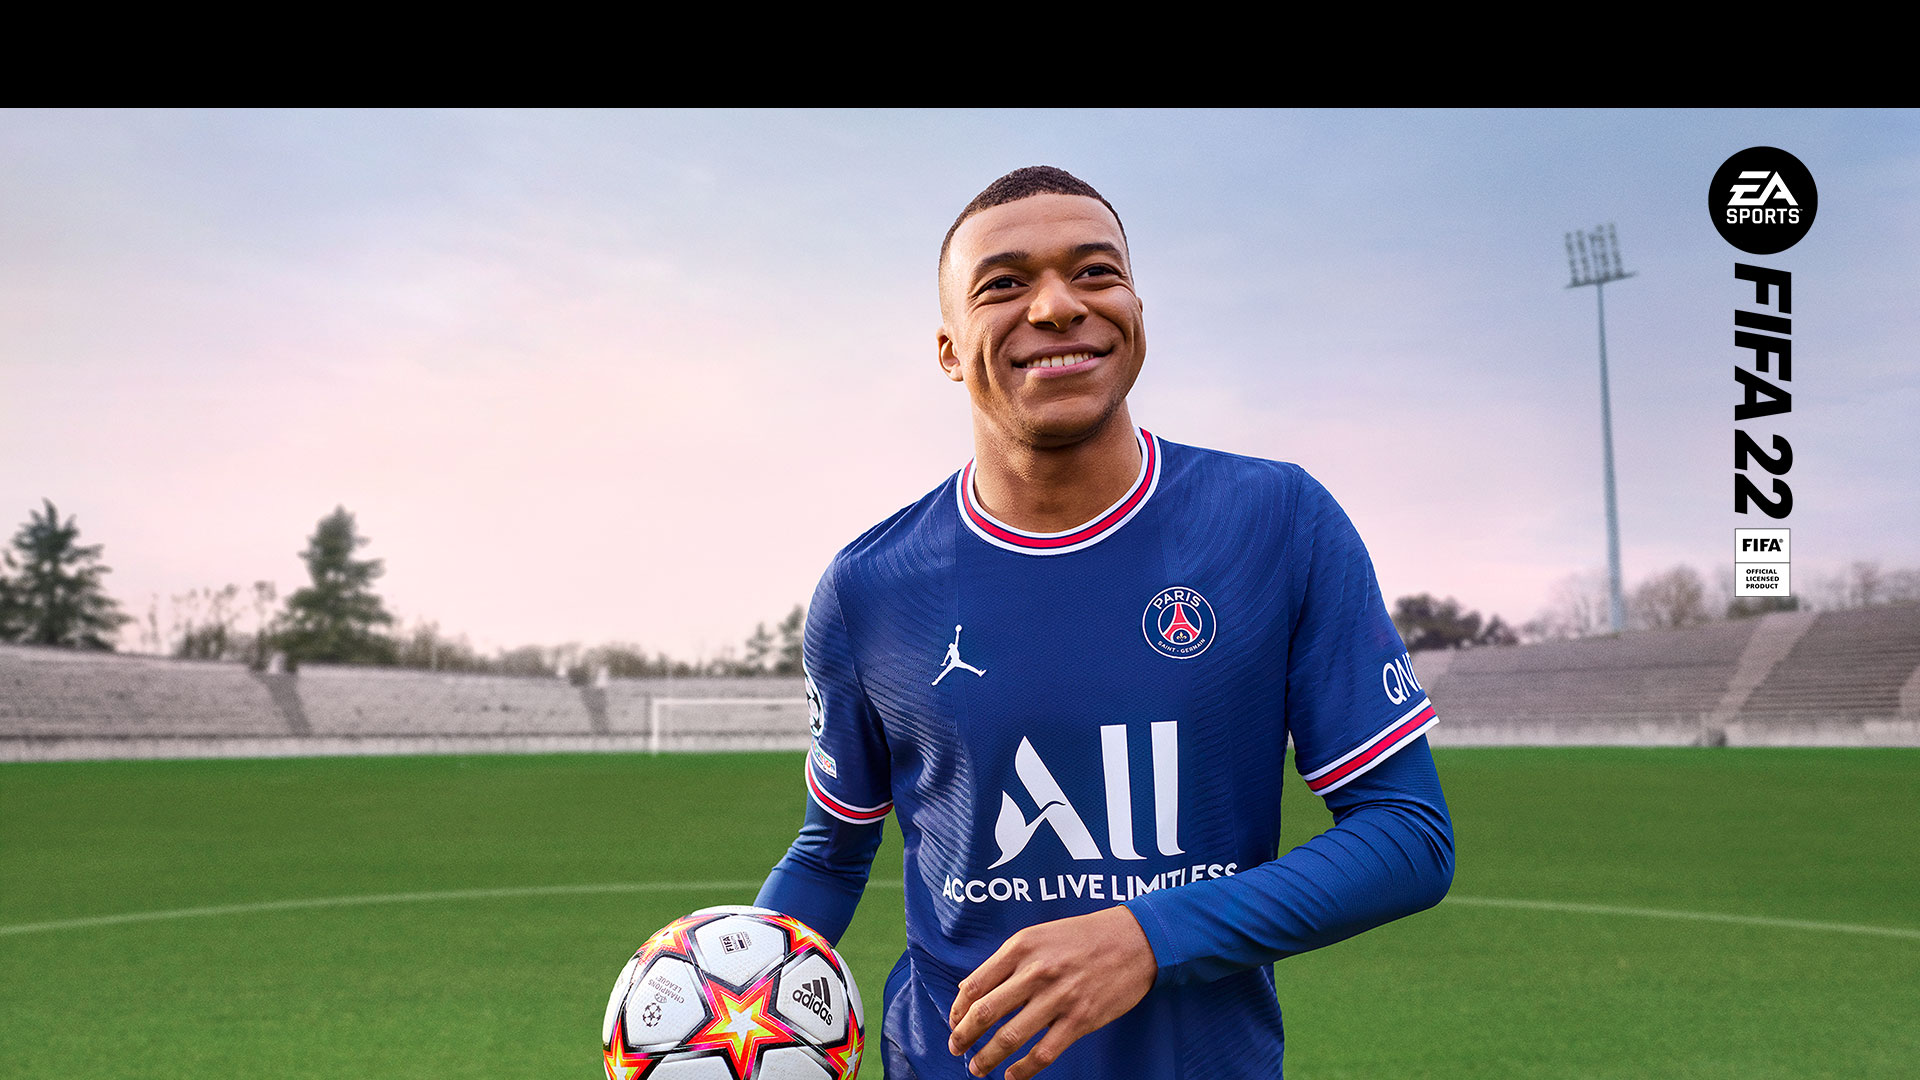 EA Sports, producto oficial con licencia de la FIFA 22, un jugador sonriente sostiene una pelota en un estadio vacío.